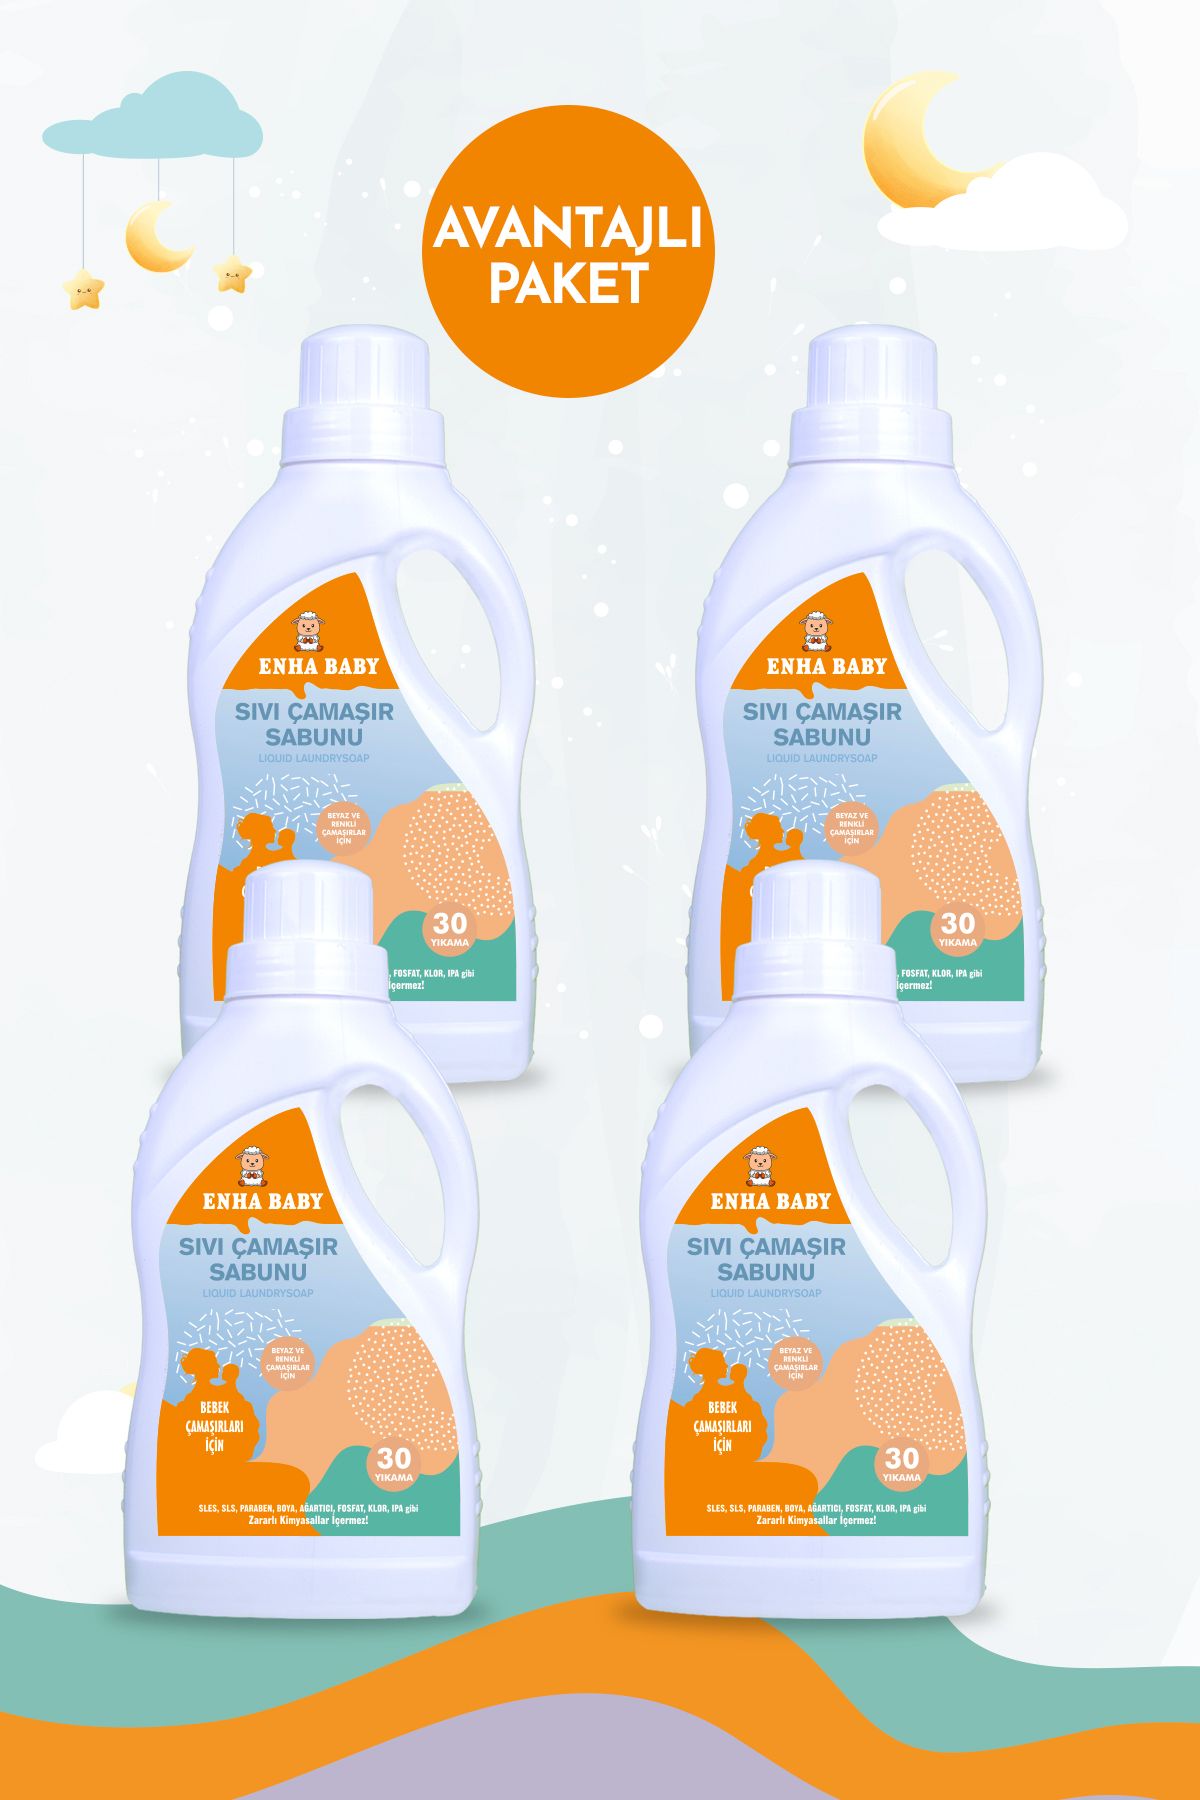 ENHA BABY Zararlı Kimyasallar İçermeyen Bebek Sıvı Çamaşır Sabunu 4'lü Avantaj Paket